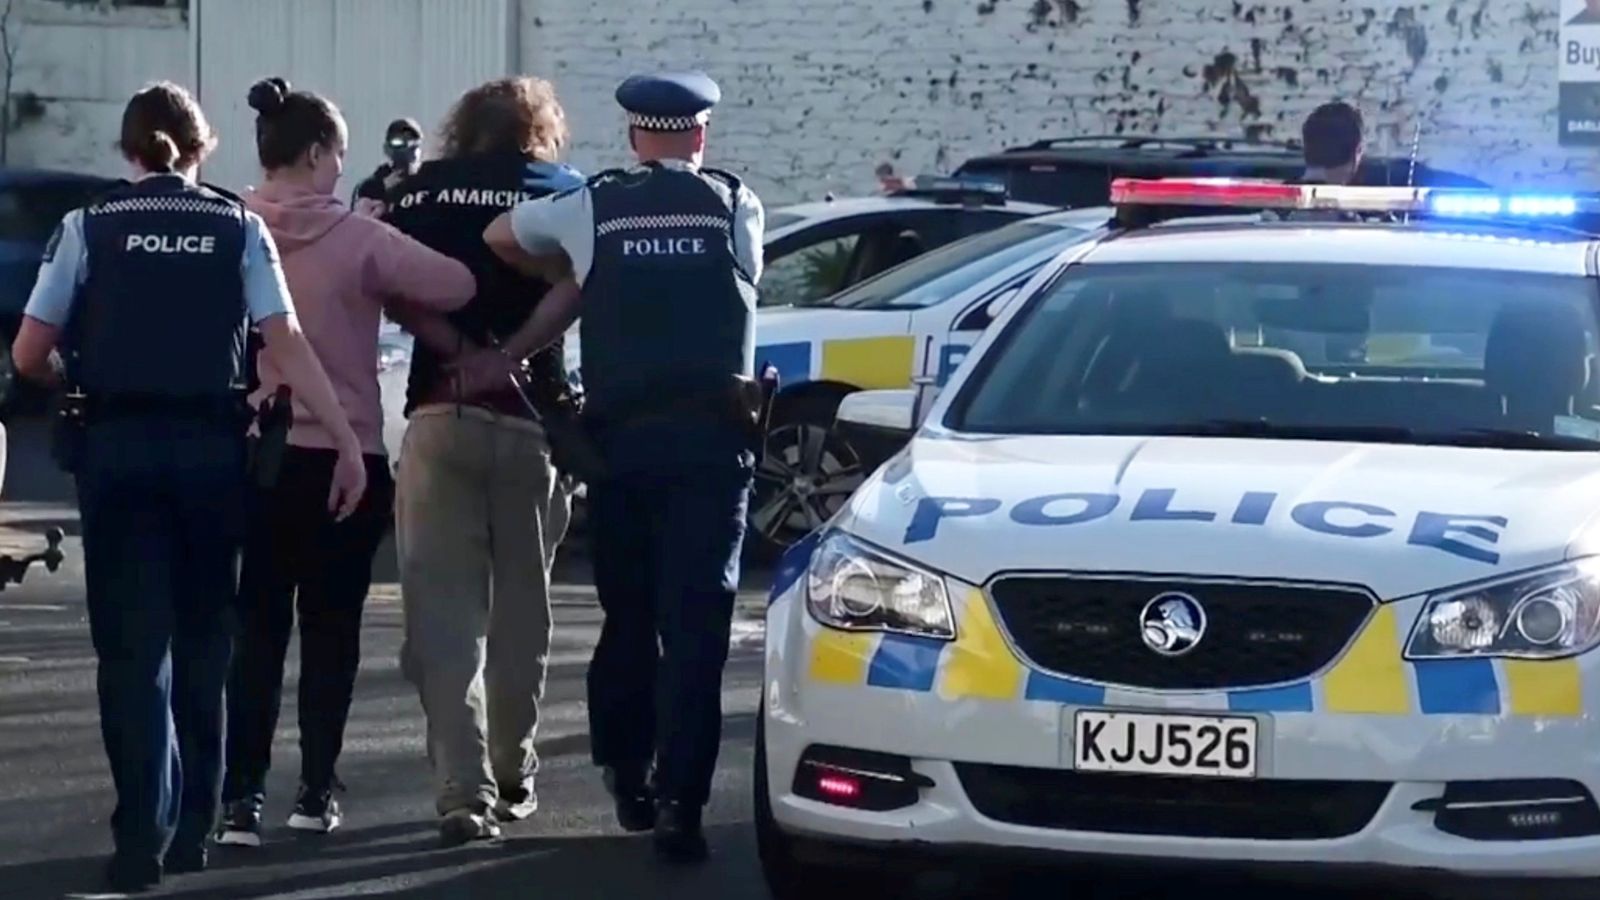 Elogio pubblico per azioni “eroiche” nell’arresto di un aggressore in un accoltellamento in un supermercato in Nuova Zelanda |  notizie dal mondo